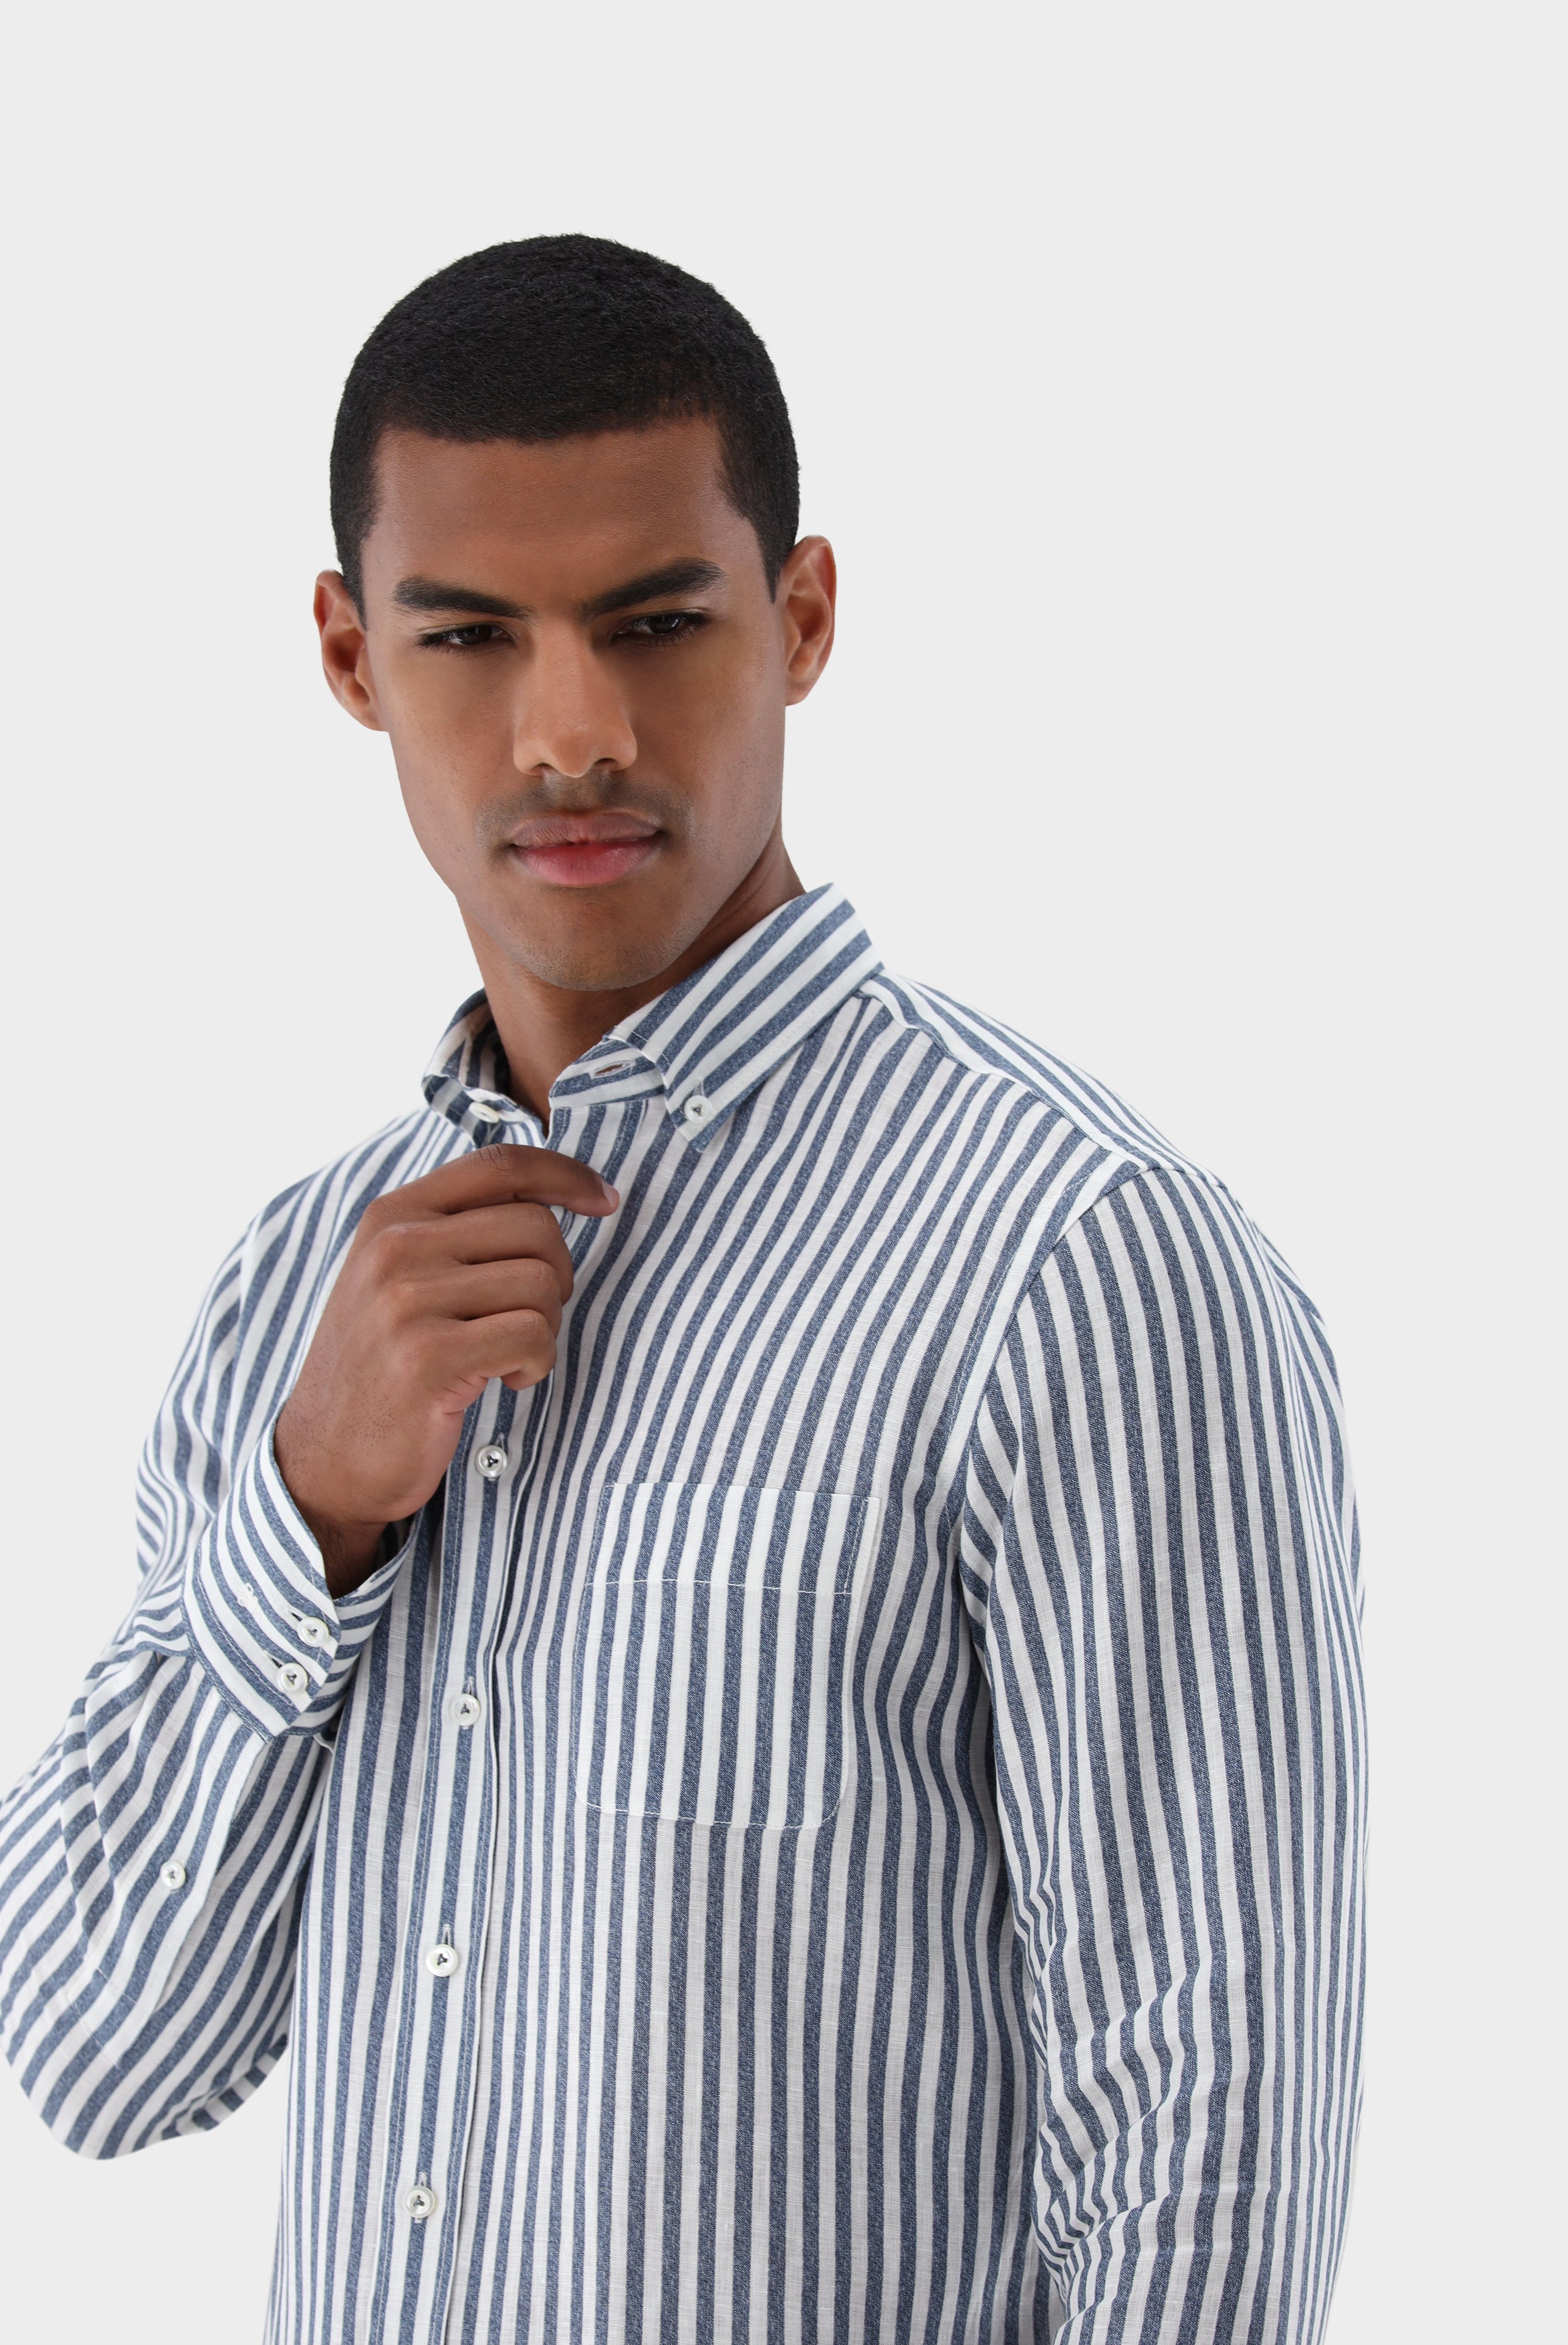 Casual Hemden+Leinenhemd mit Streifen-Druck Tailor Fit+20.2013.9V.170352.780.42